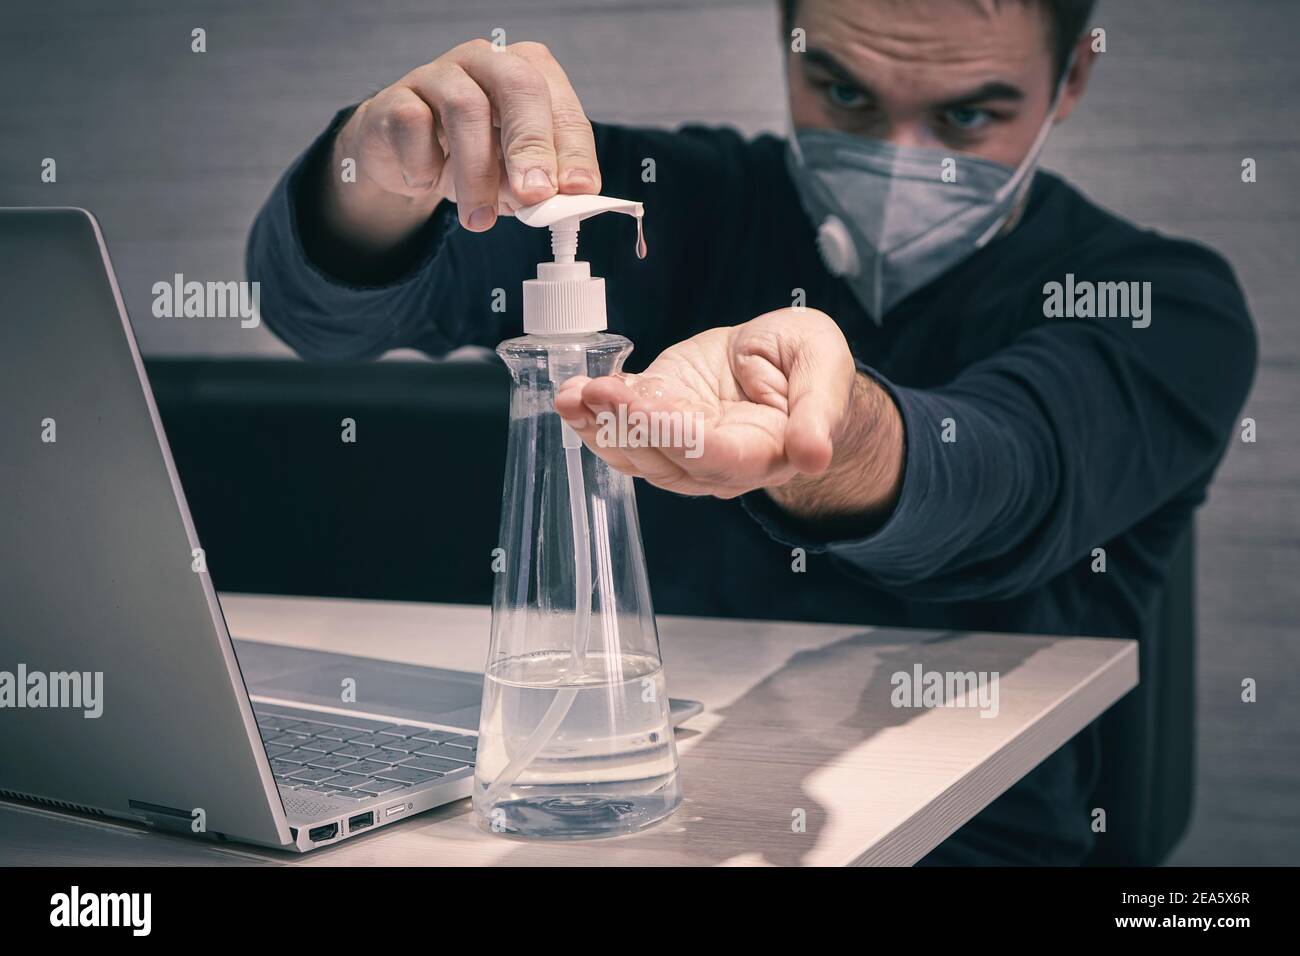 Ein junger Arbeiter in einer medizinischen Maske arbeitet von zu Hause in den frühen Morgen. Pandemie covid 19 Coronavirus. Mann behandelt seine Hände mit einem Desinfektionsmittel zu disi Stockfoto